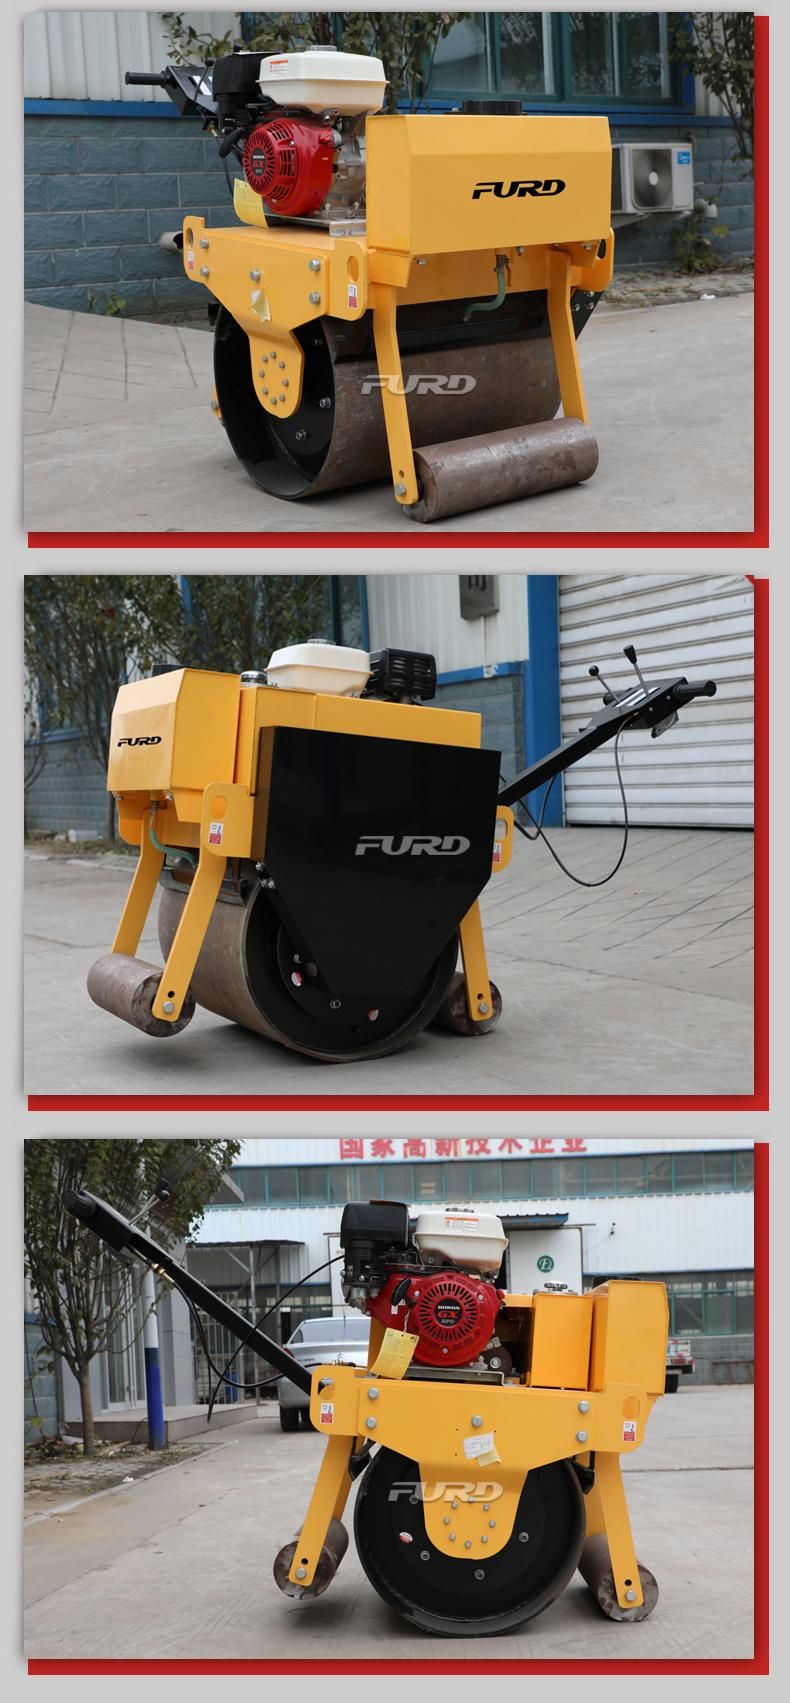 Manual Vibrating Road Roller Soil Compactor Mini Asphalt Roller for Sale UAE